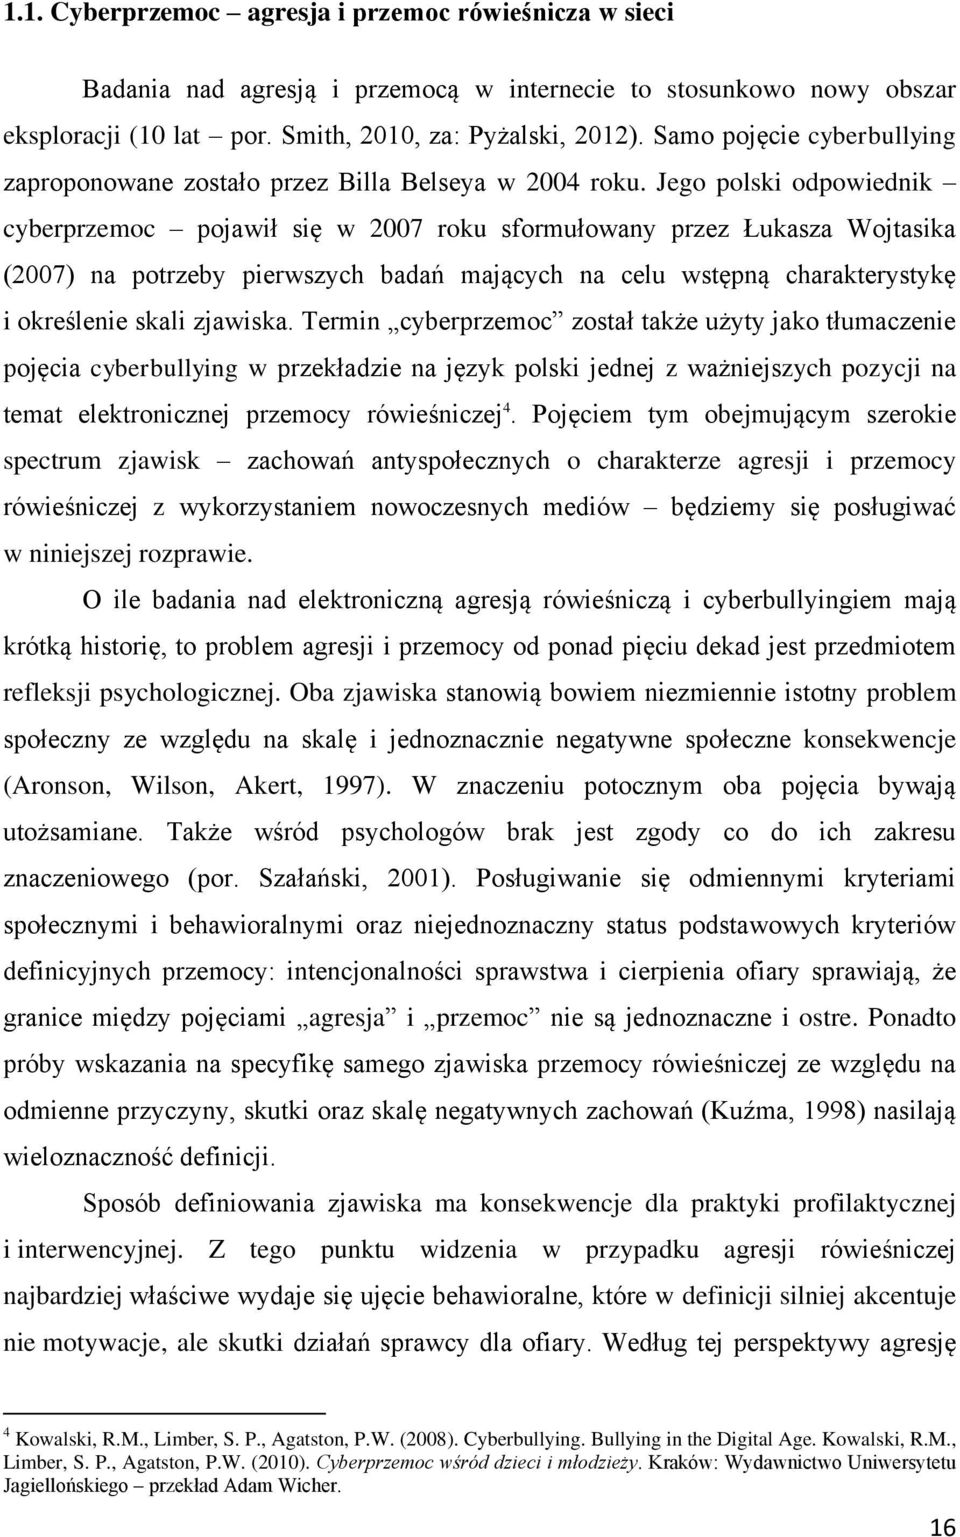 Jego polski odpowiednik cyberprzemoc pojawił się w 2007 roku sformułowany przez Łukasza Wojtasika (2007) na potrzeby pierwszych badań mających na celu wstępną charakterystykę i określenie skali